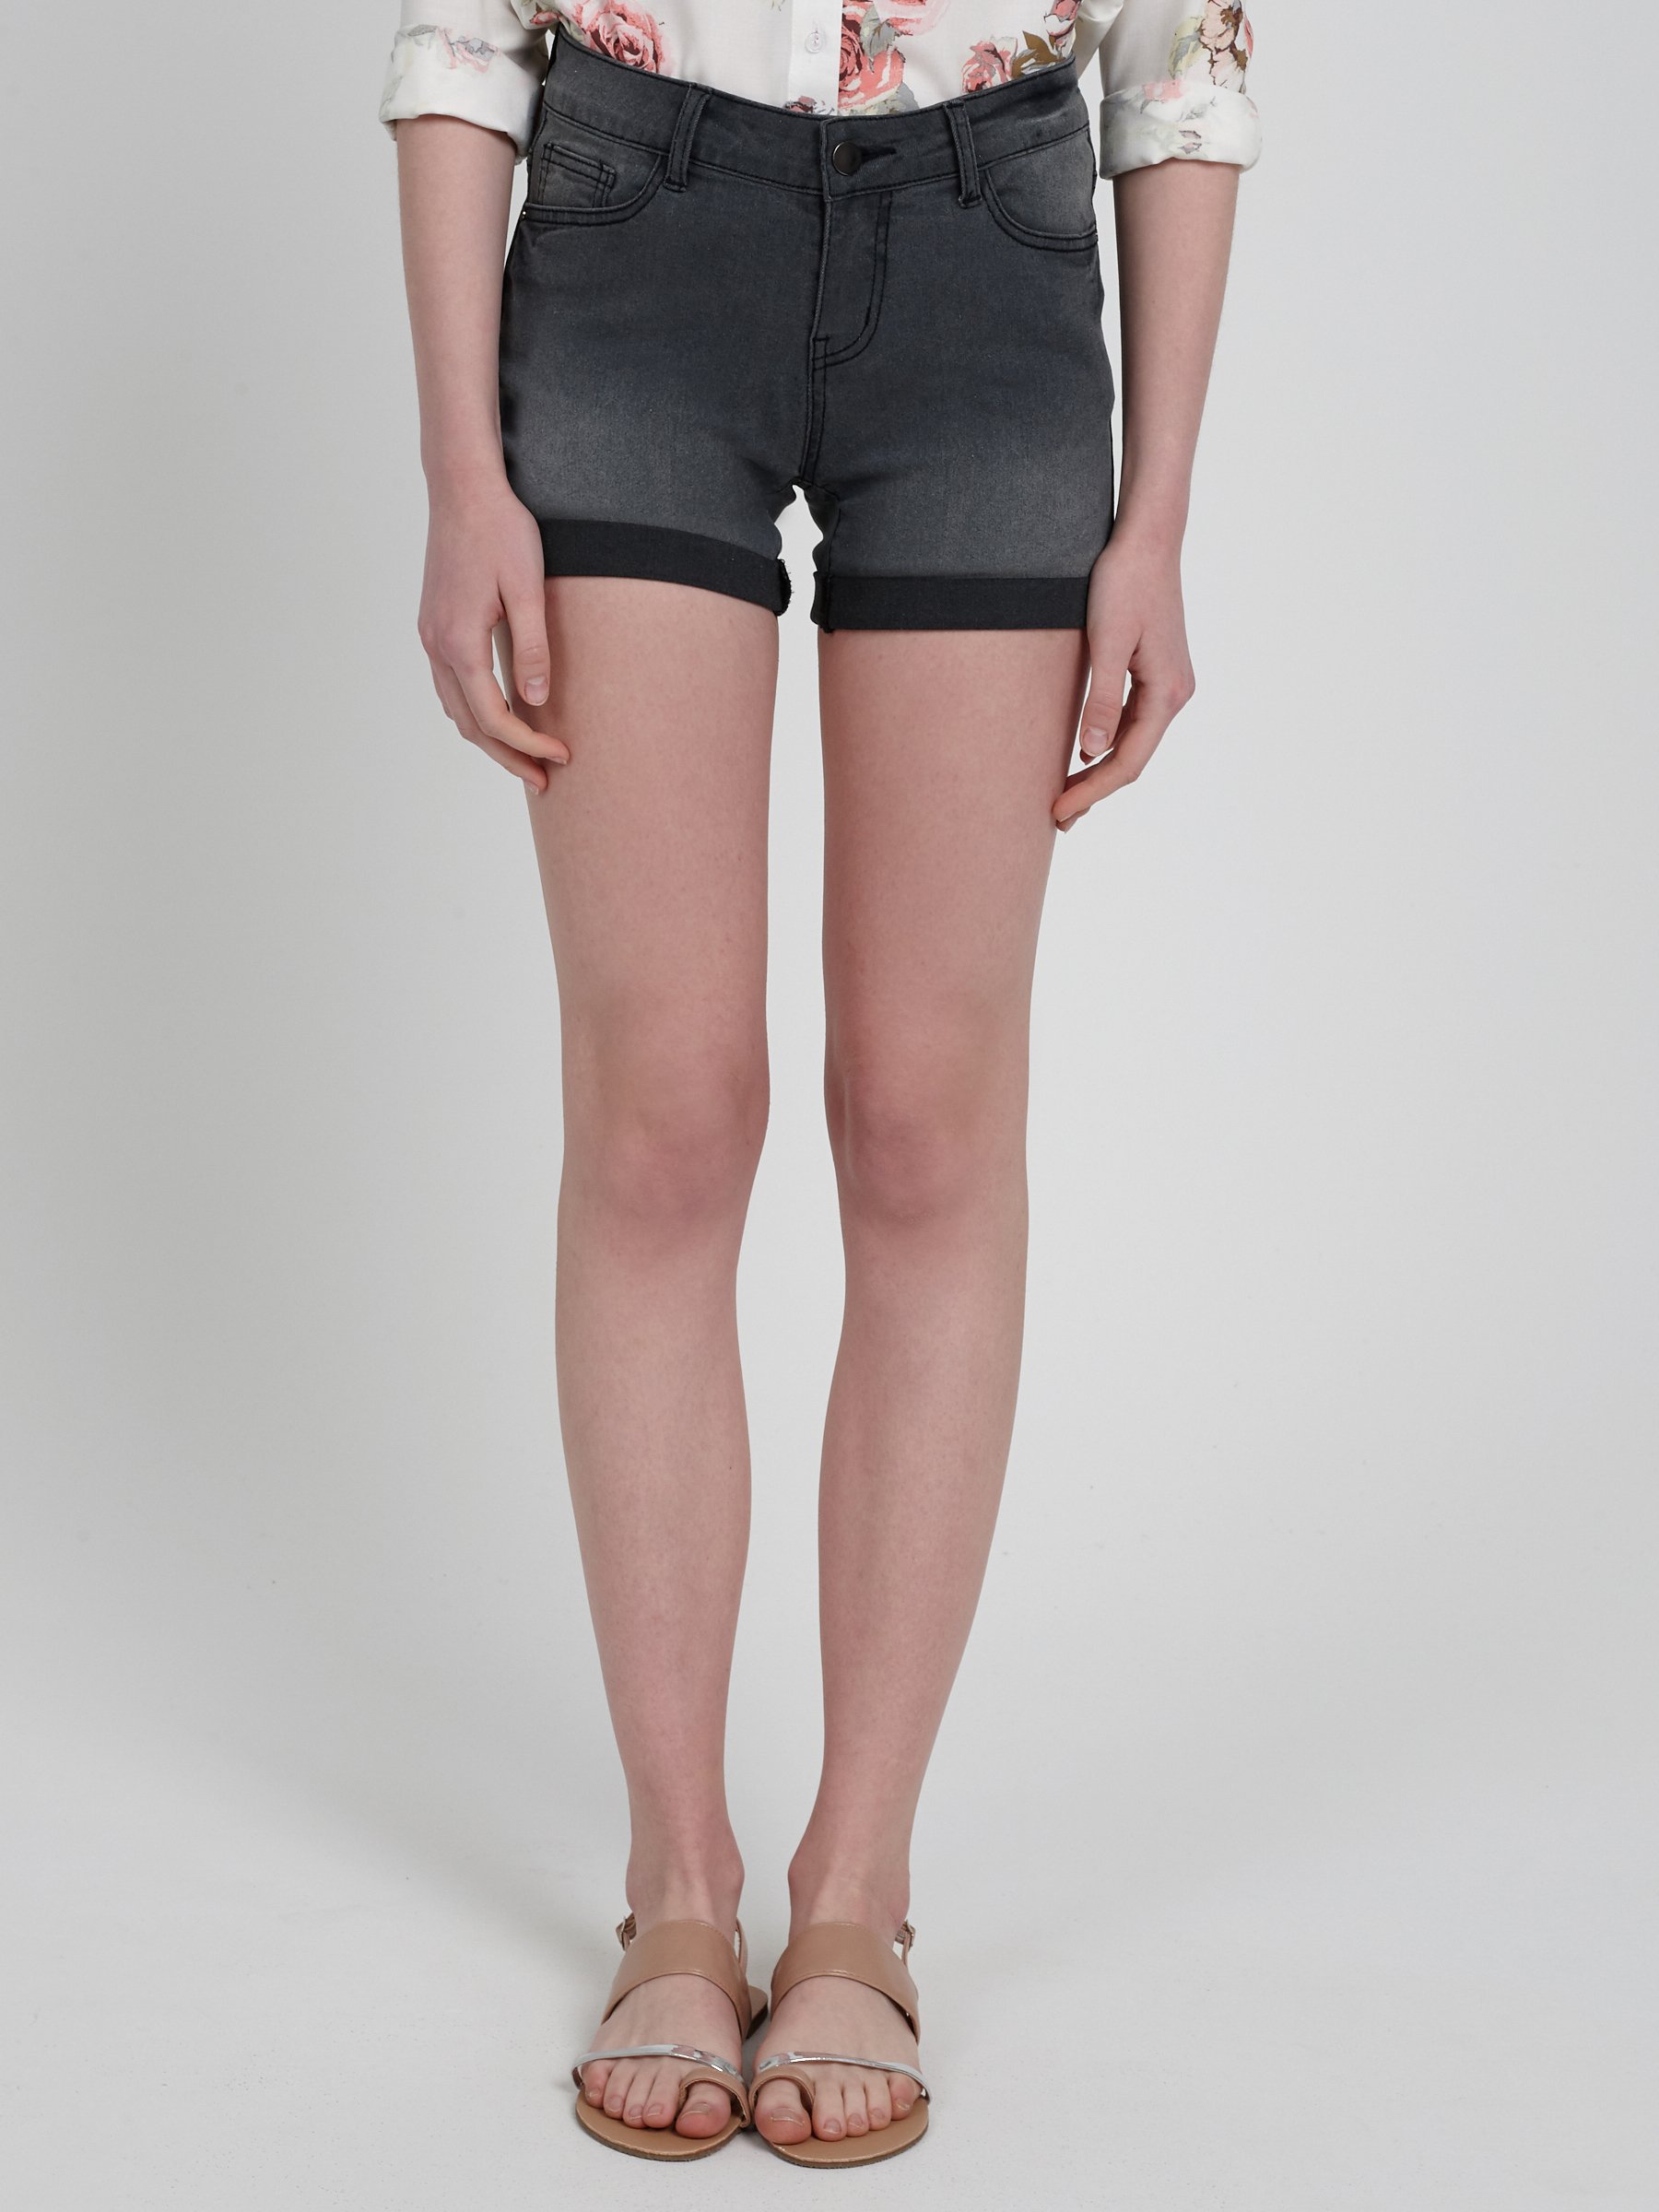 dark grey denim shorts